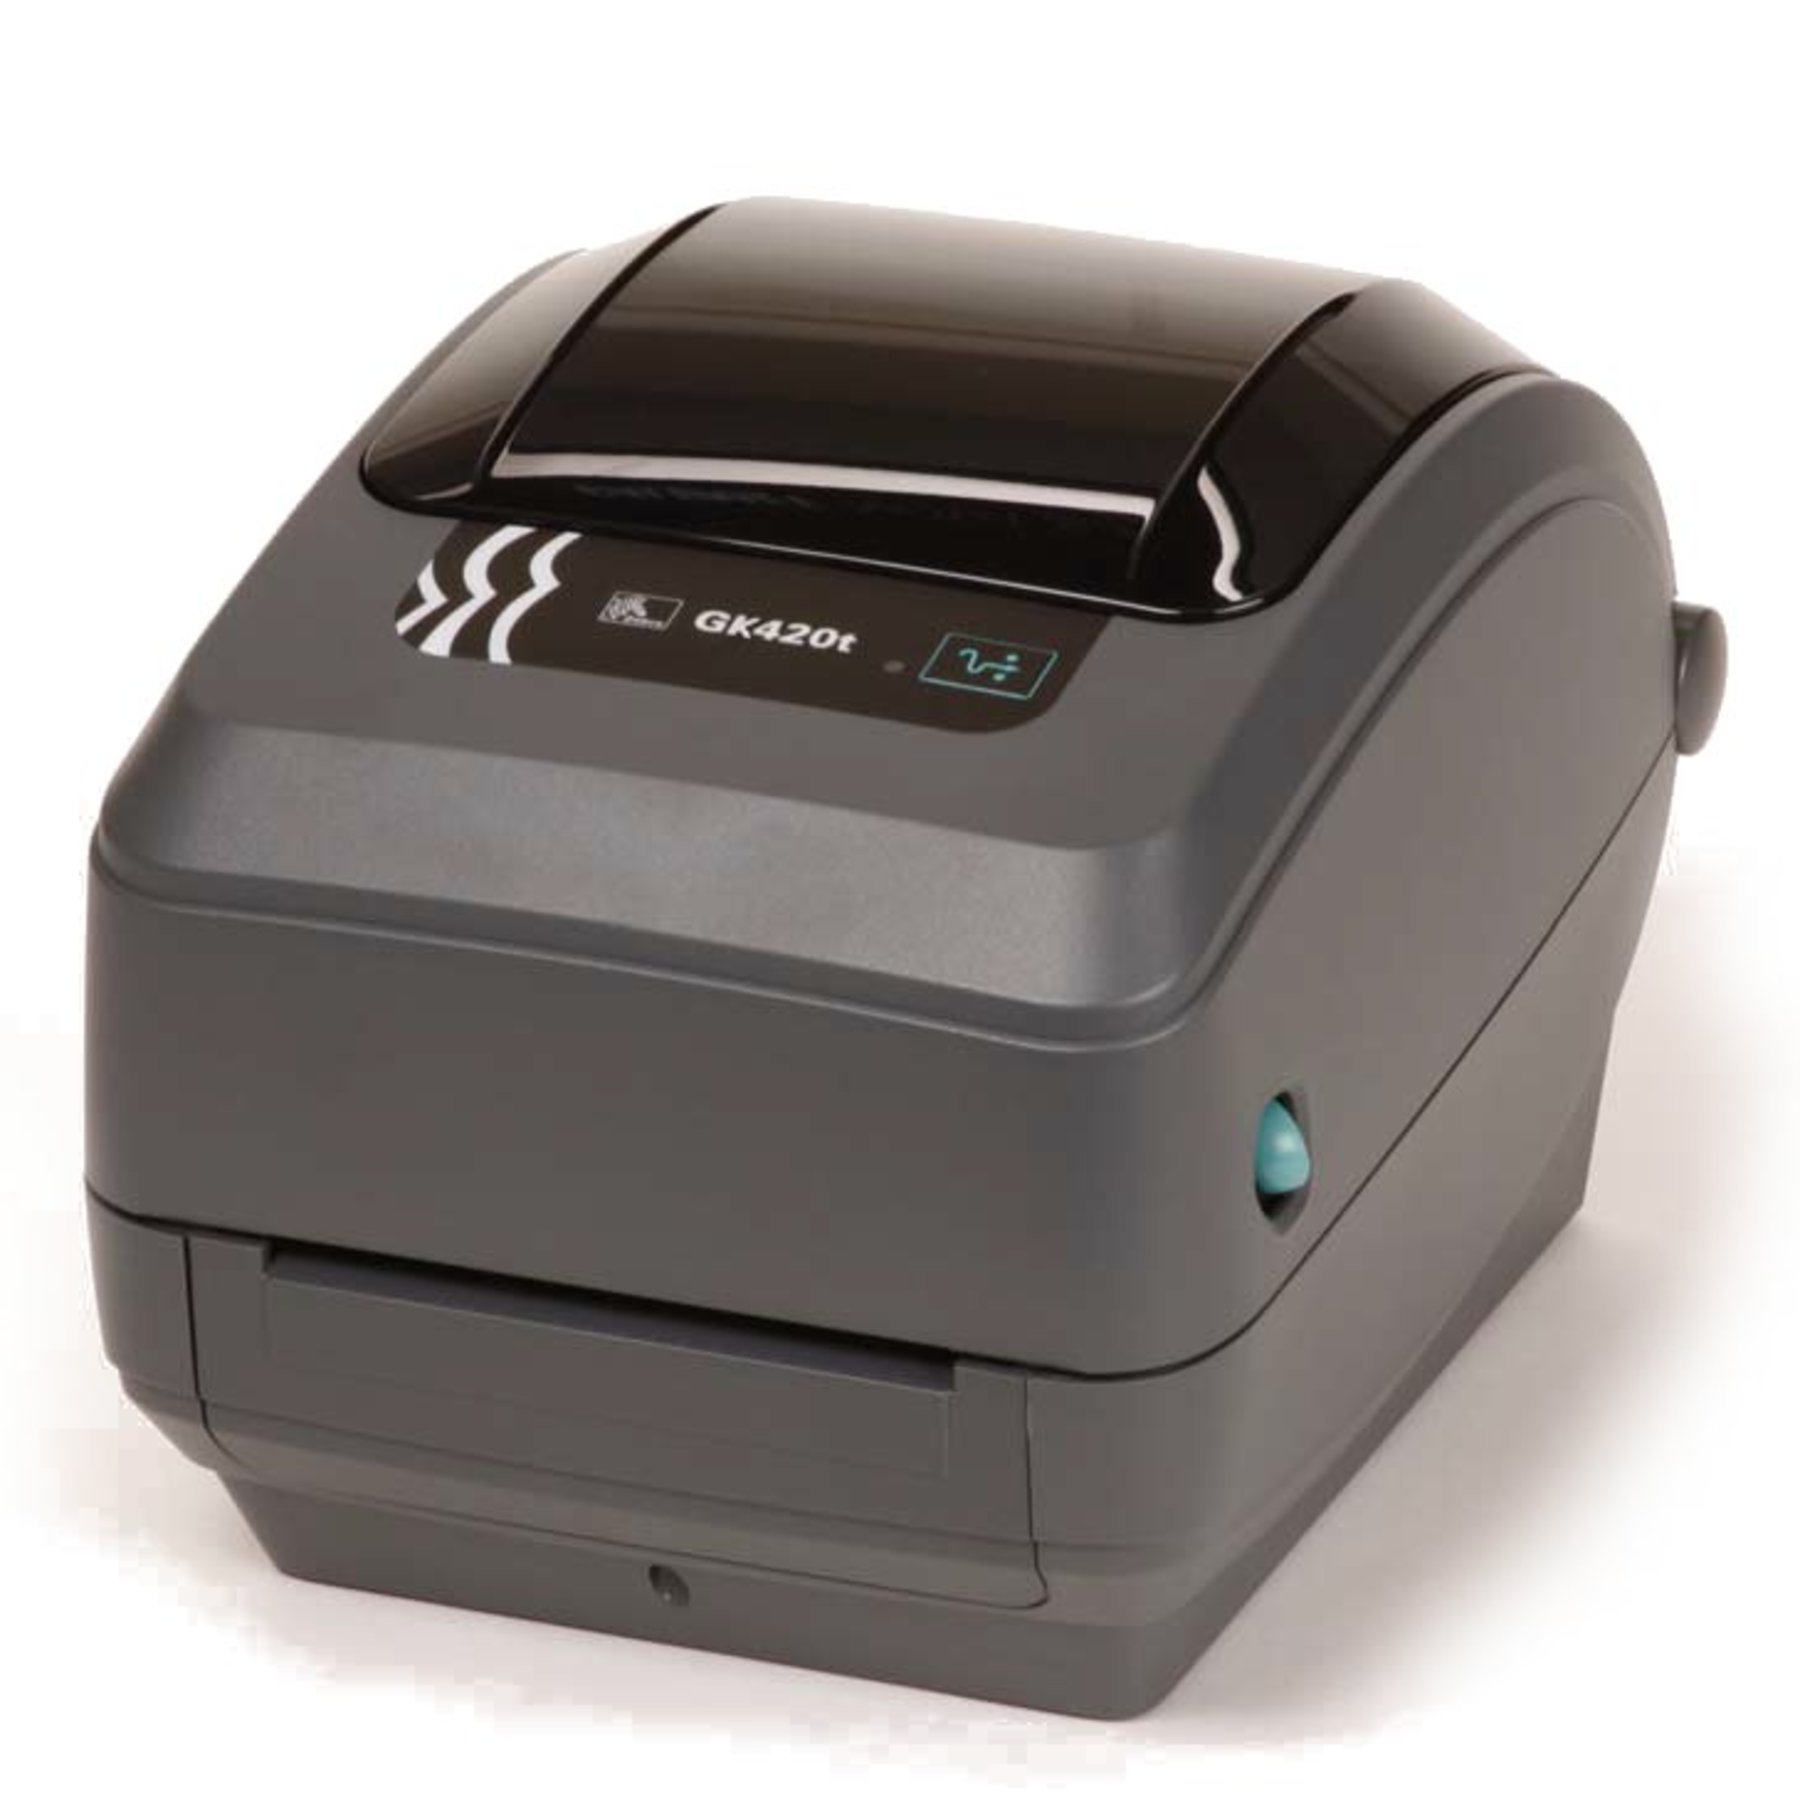 Zebra Gk420t Desktop Labelling Printer The Labelman Ltd 0434